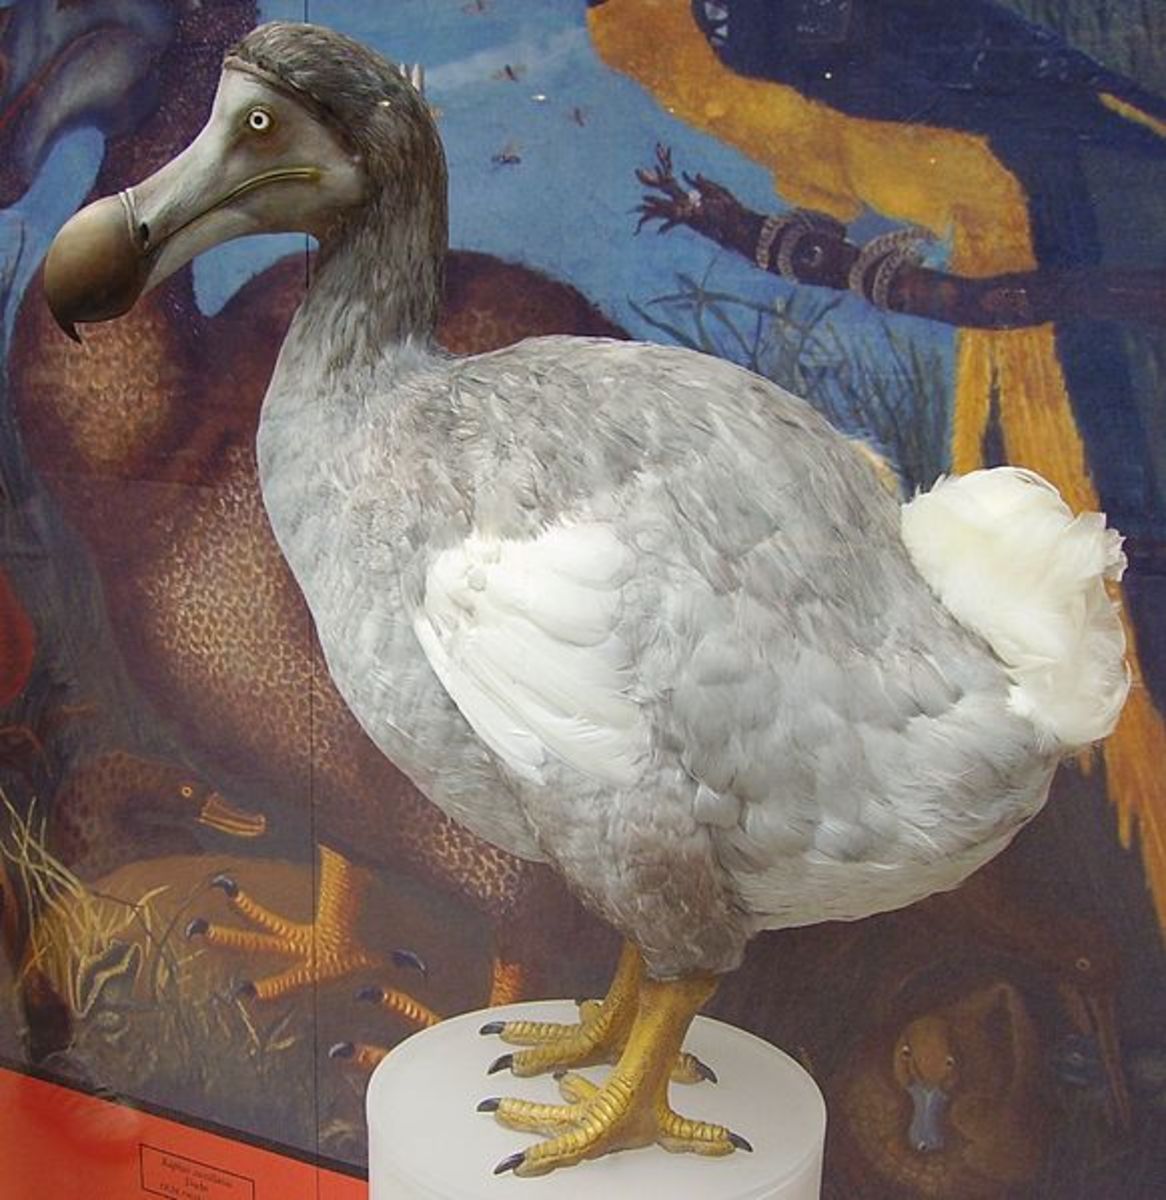 Dodo- An Extinct Bird